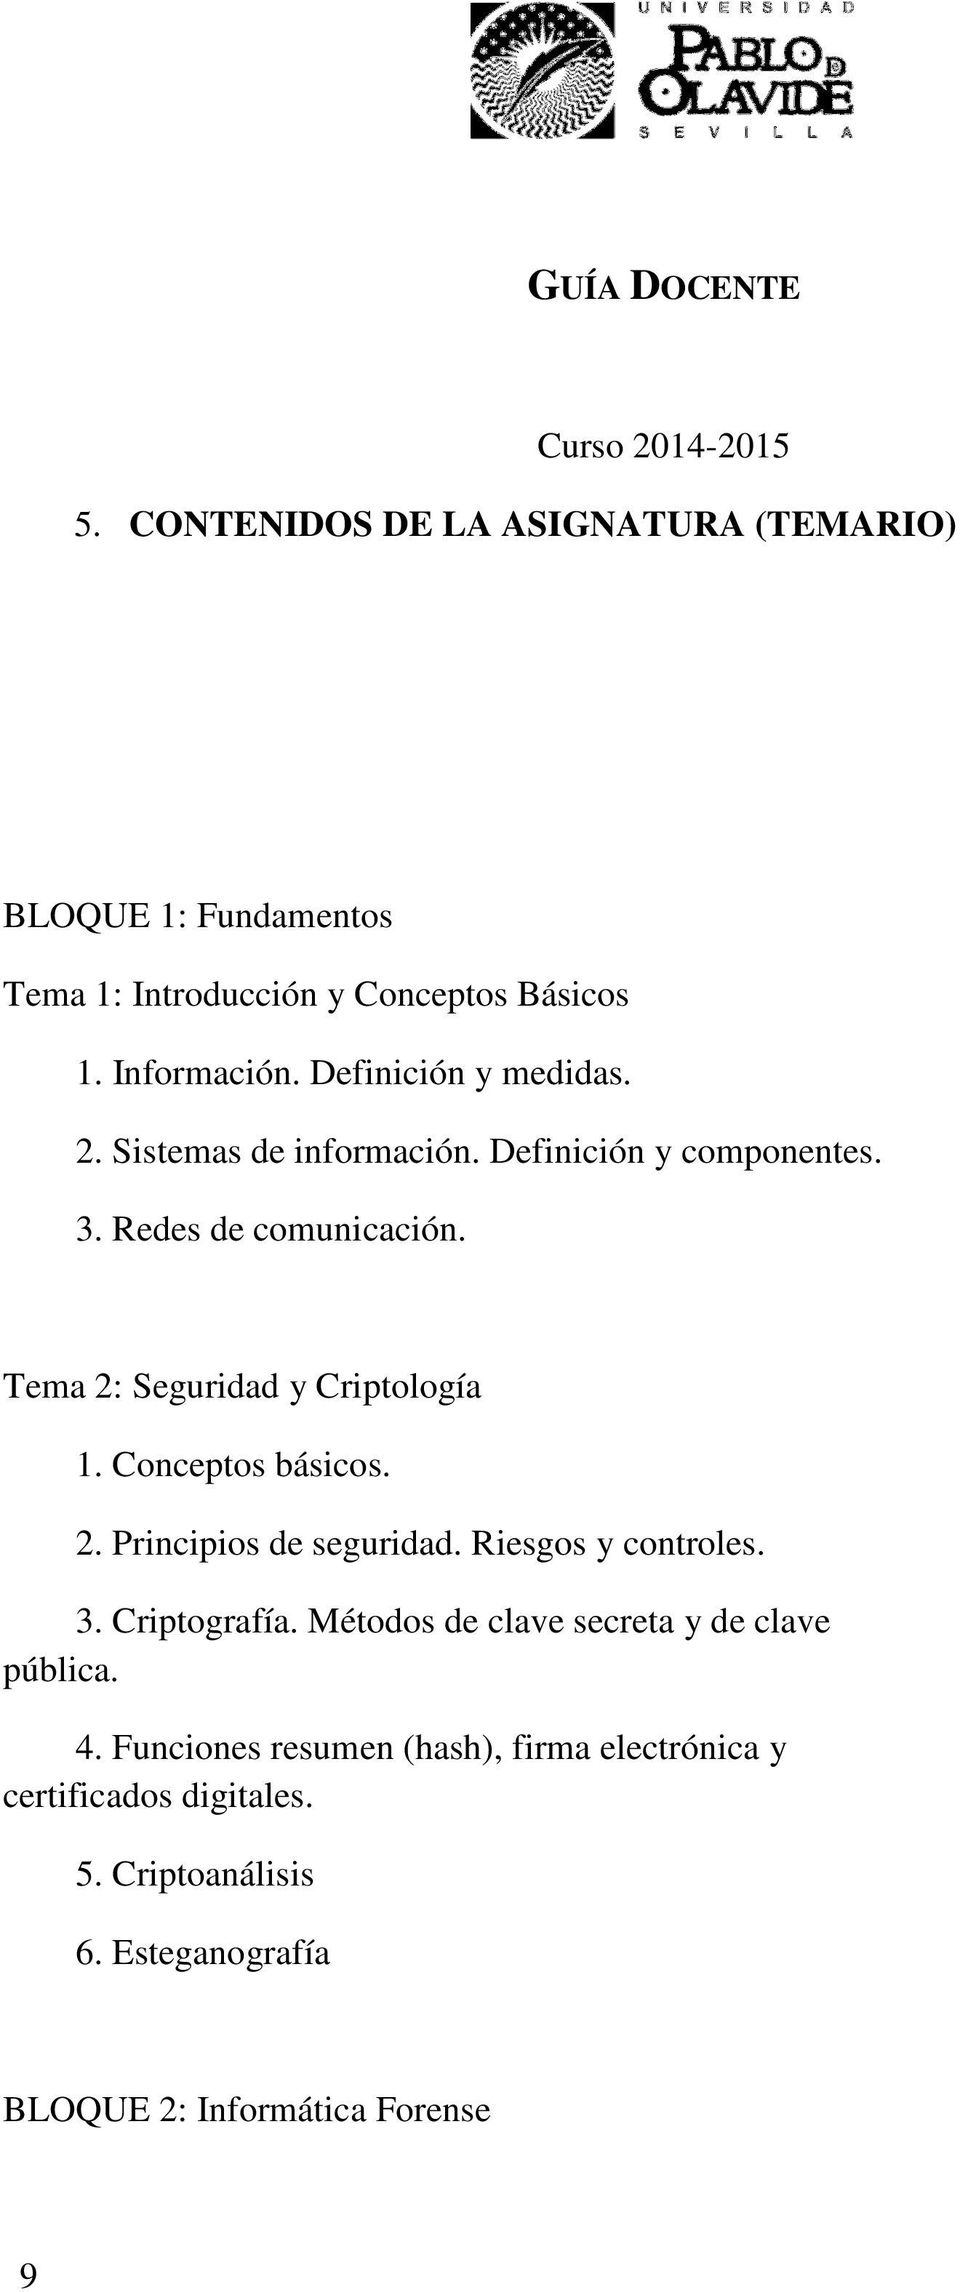 Tema 2: Seguridad y Criptología 1. Conceptos básicos. 2. Principios de seguridad. Riesgos y controles. 3. Criptografía.